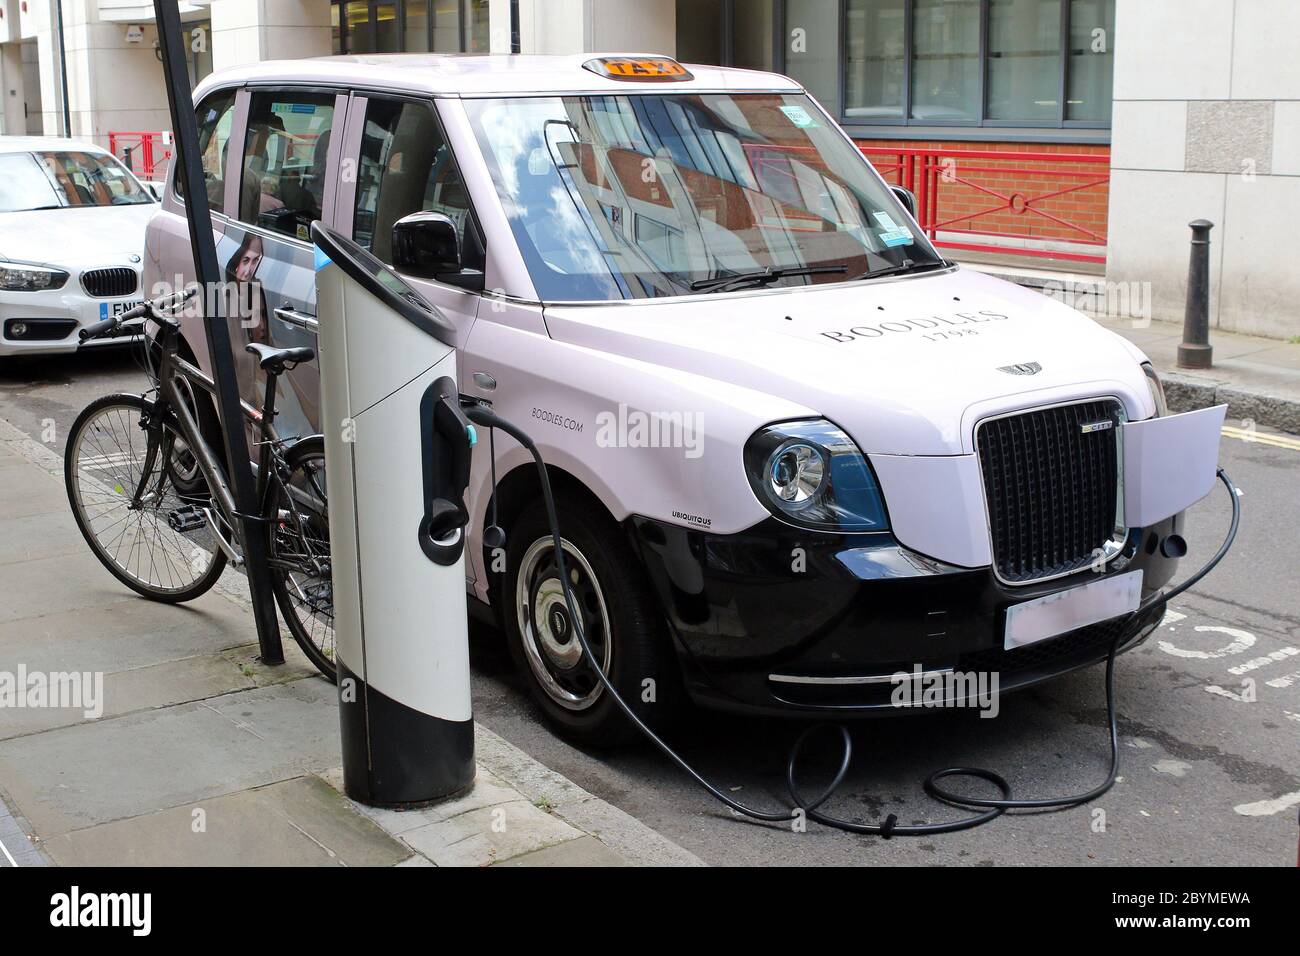 13.08.2019, Windsor, Berkshire, United Kingdom - an einer öffentlichen Ladestation wird ein Taxi für Elektroautos aufgeladen. 00S190813D119CAROEX.JPG [MODELLFREIGABE: NEIN Stockfoto